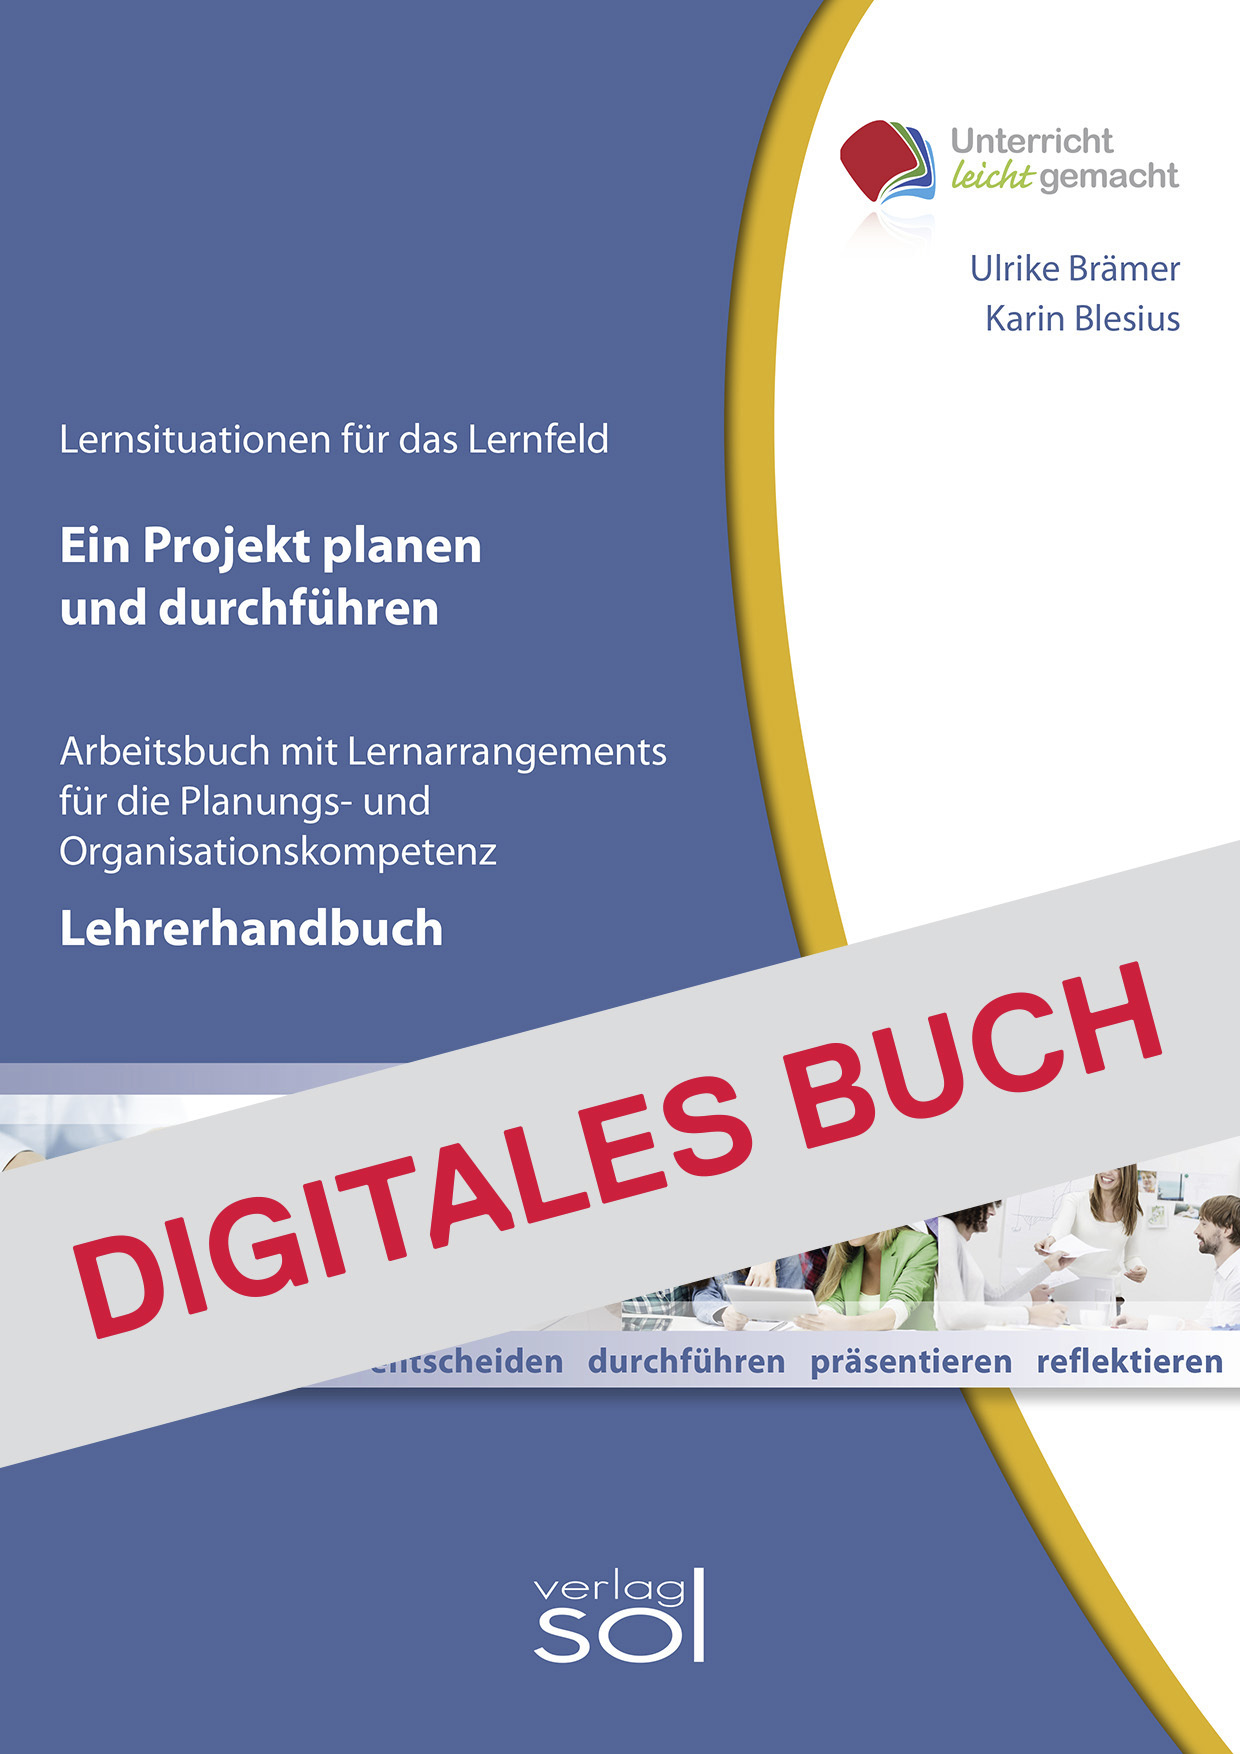 Lehrerhandbuch Ein Projekt planen und durchführen - Digitales Buch